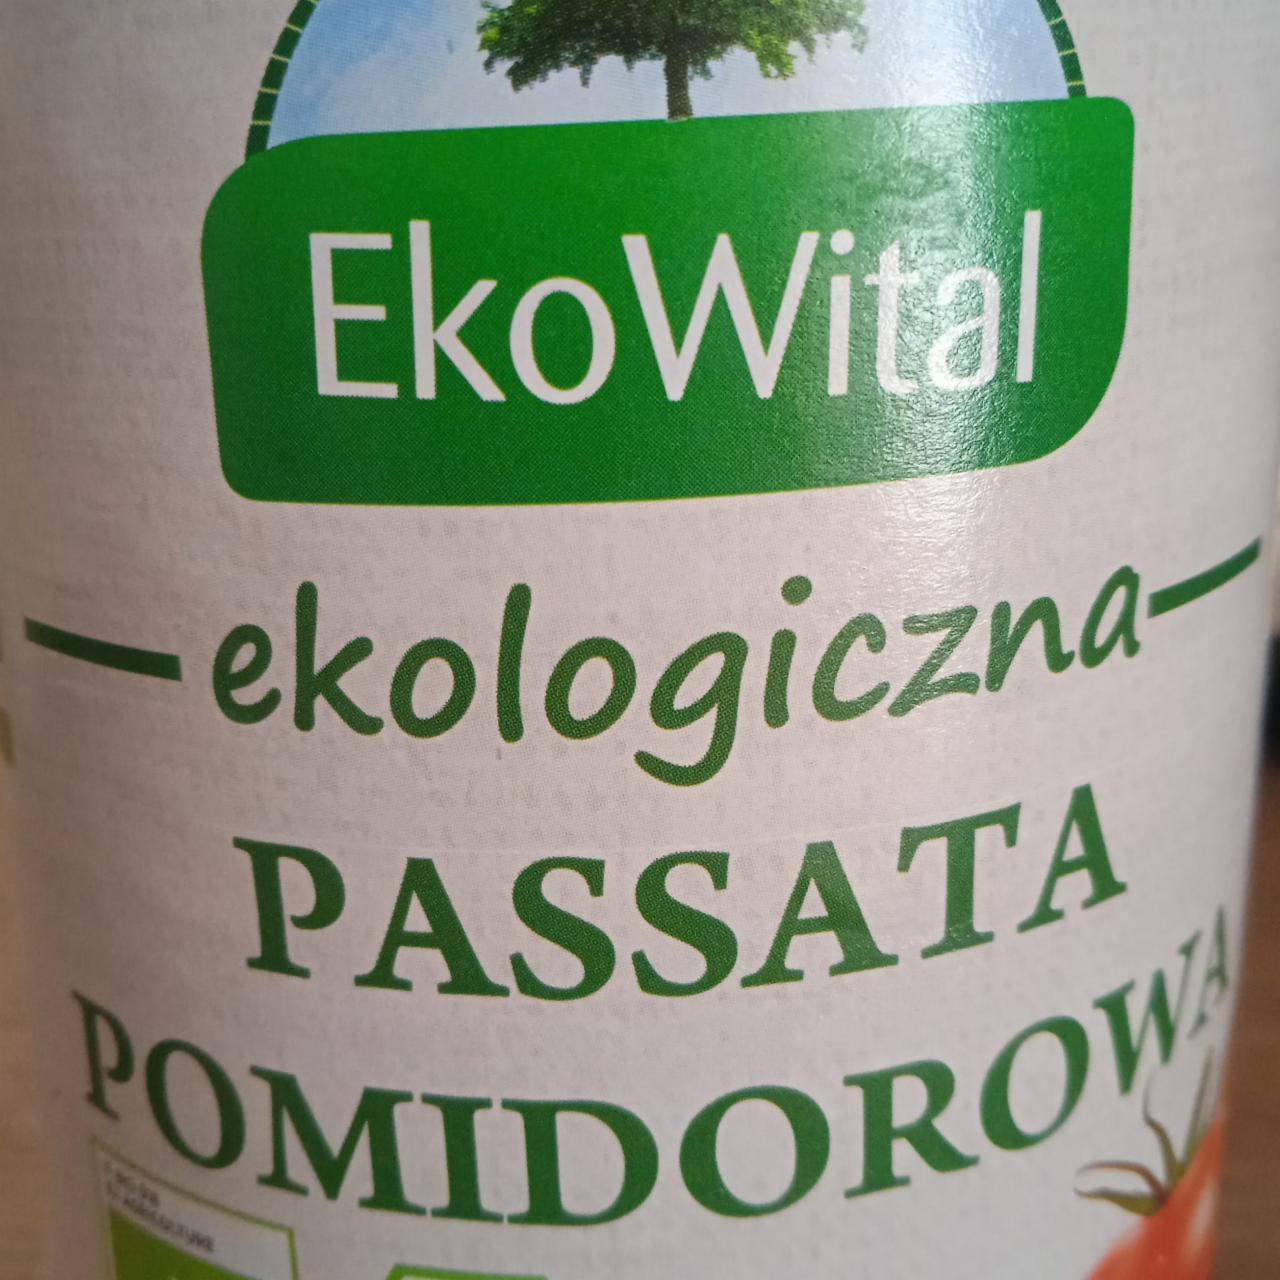 Zdjęcia - Ekologiczna passata pomidorowa EkoWital